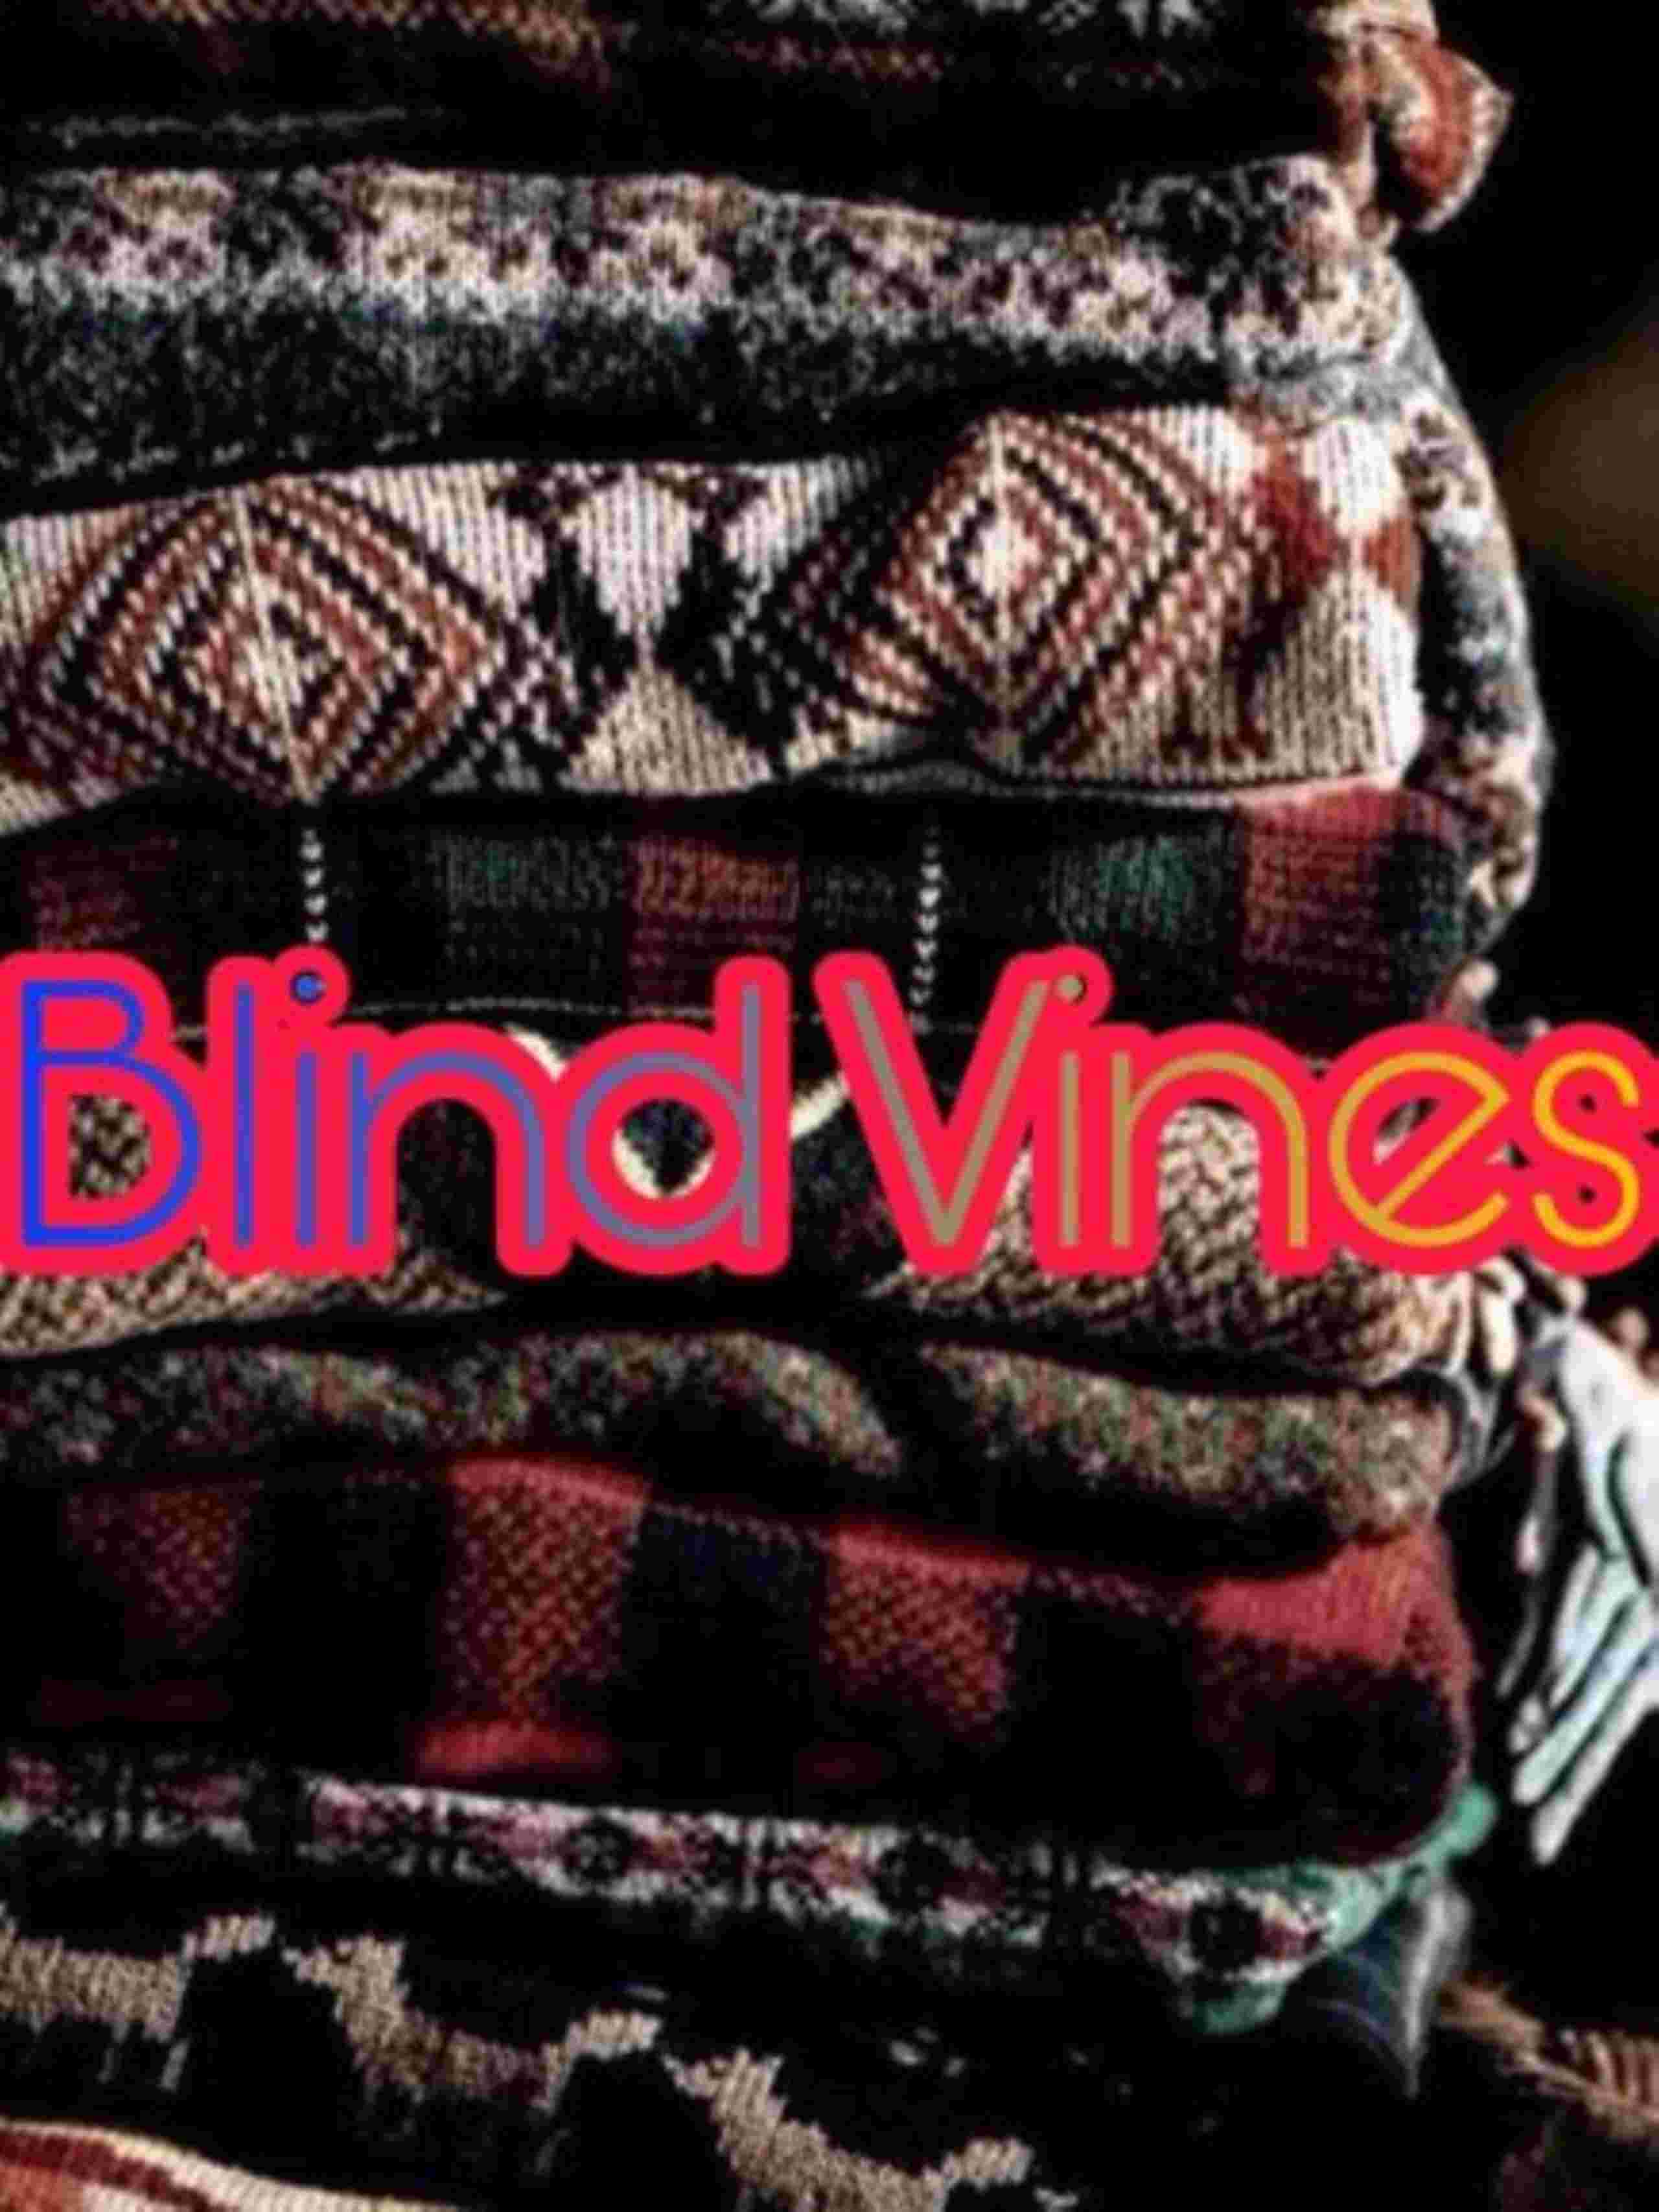 Blind Vines